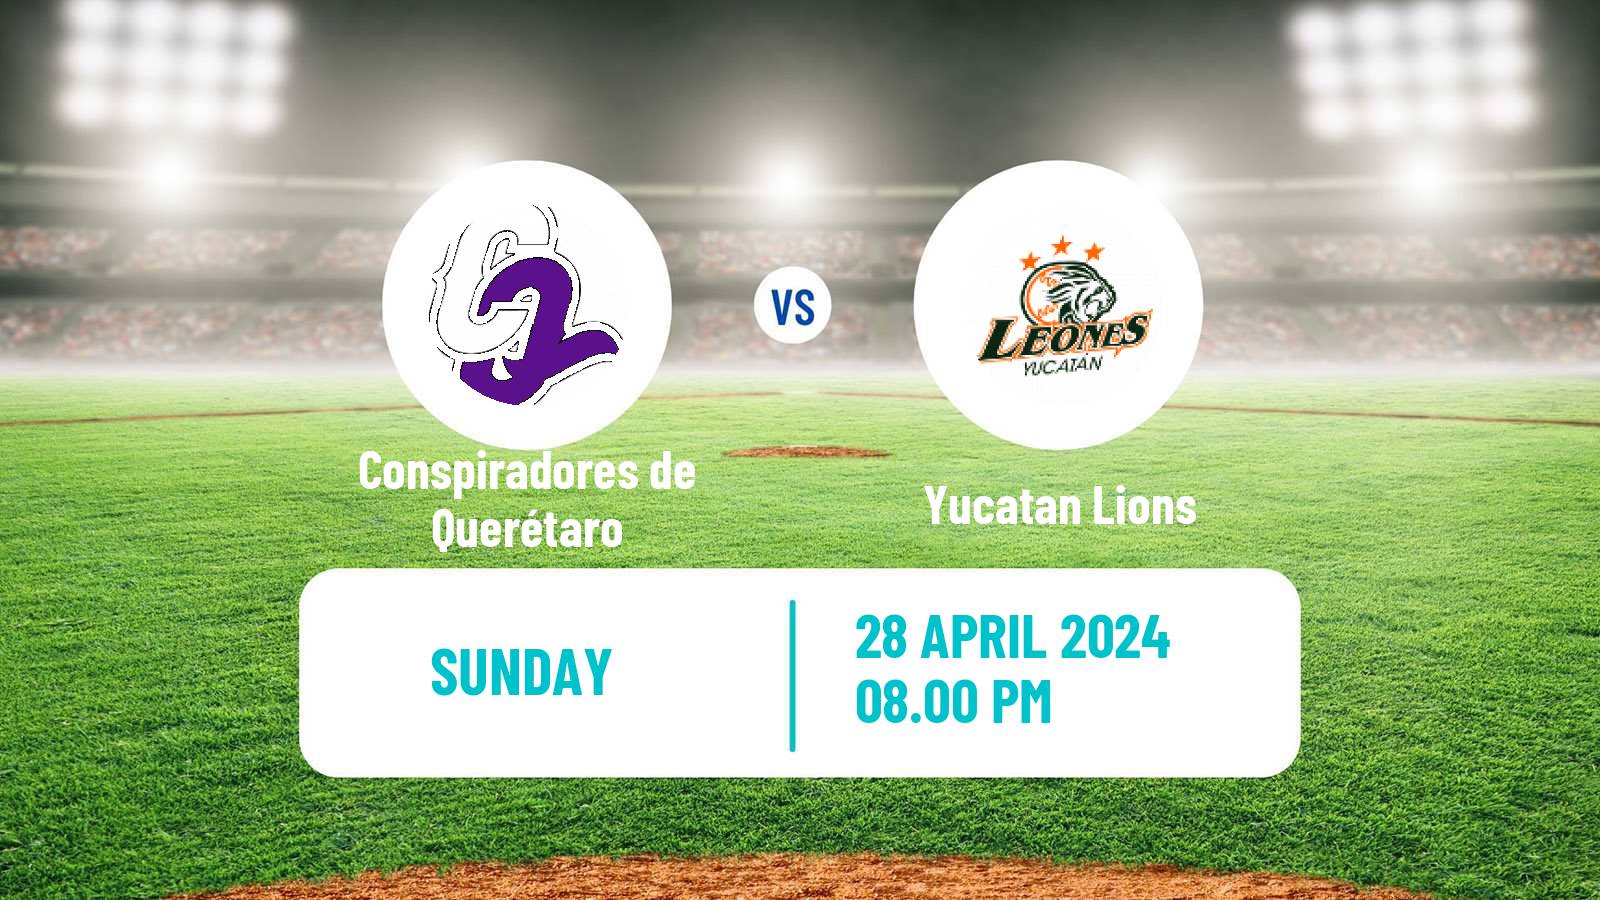 Baseball LMB Conspiradores de Querétaro - Yucatan Lions